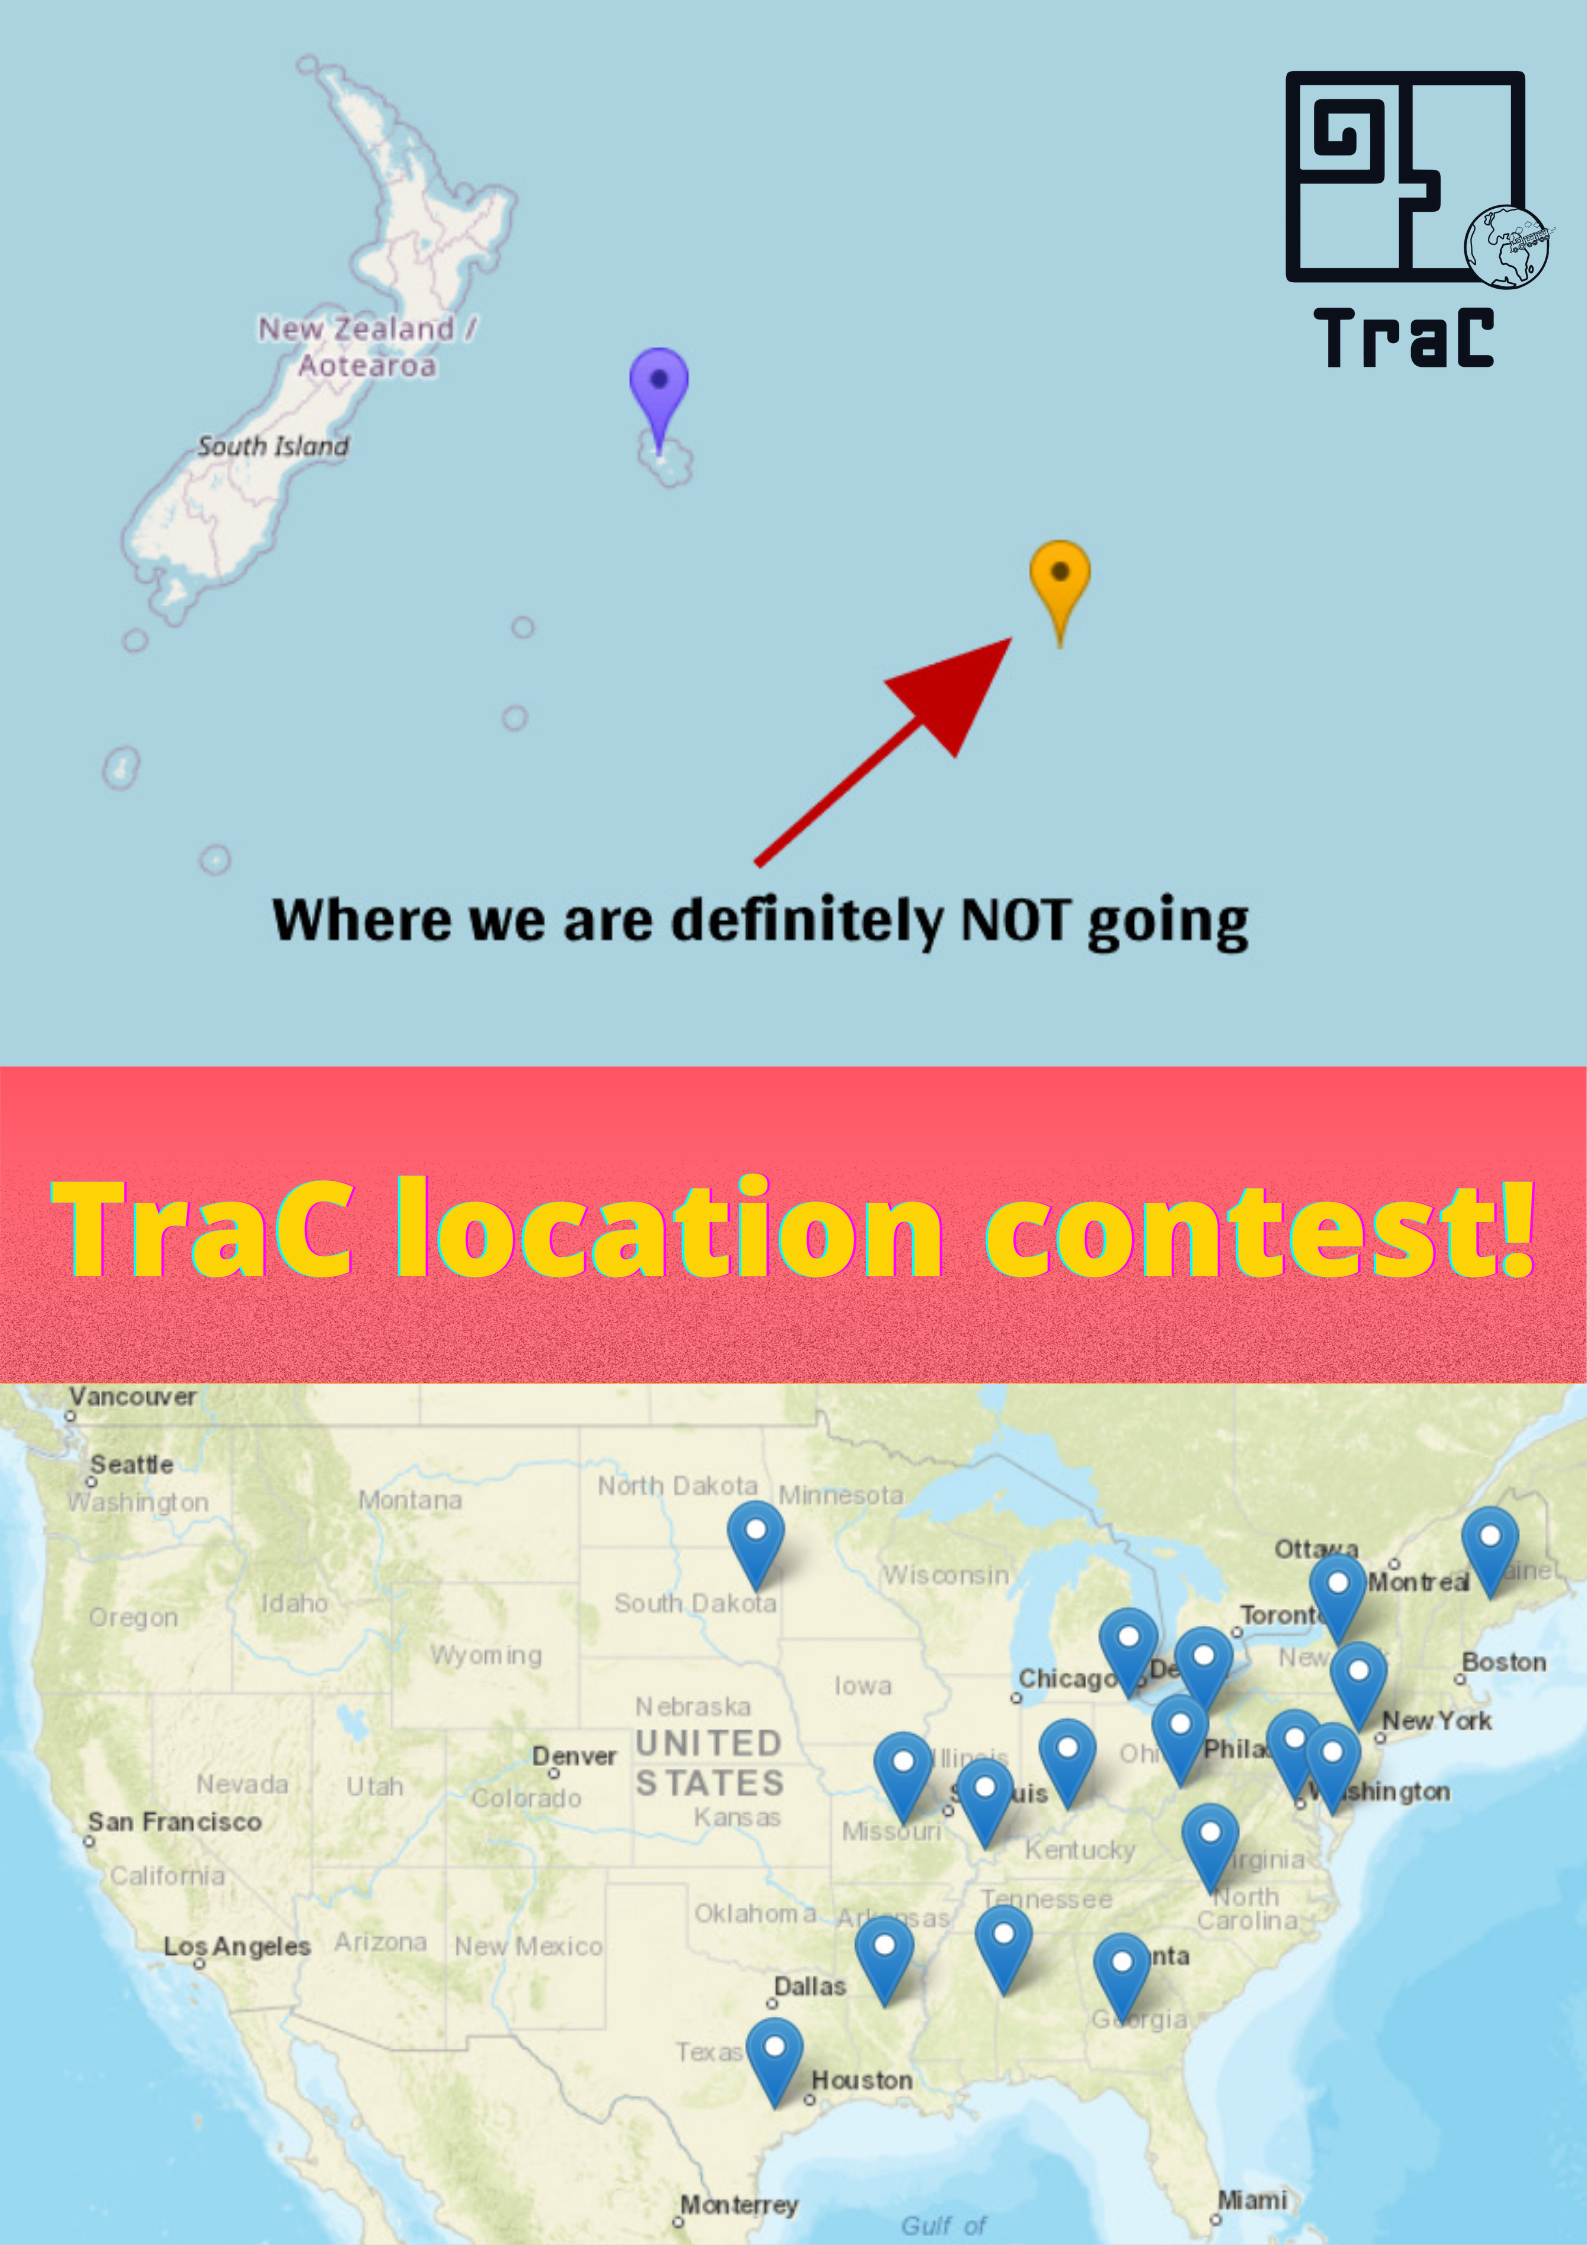 CognAC trip location contest